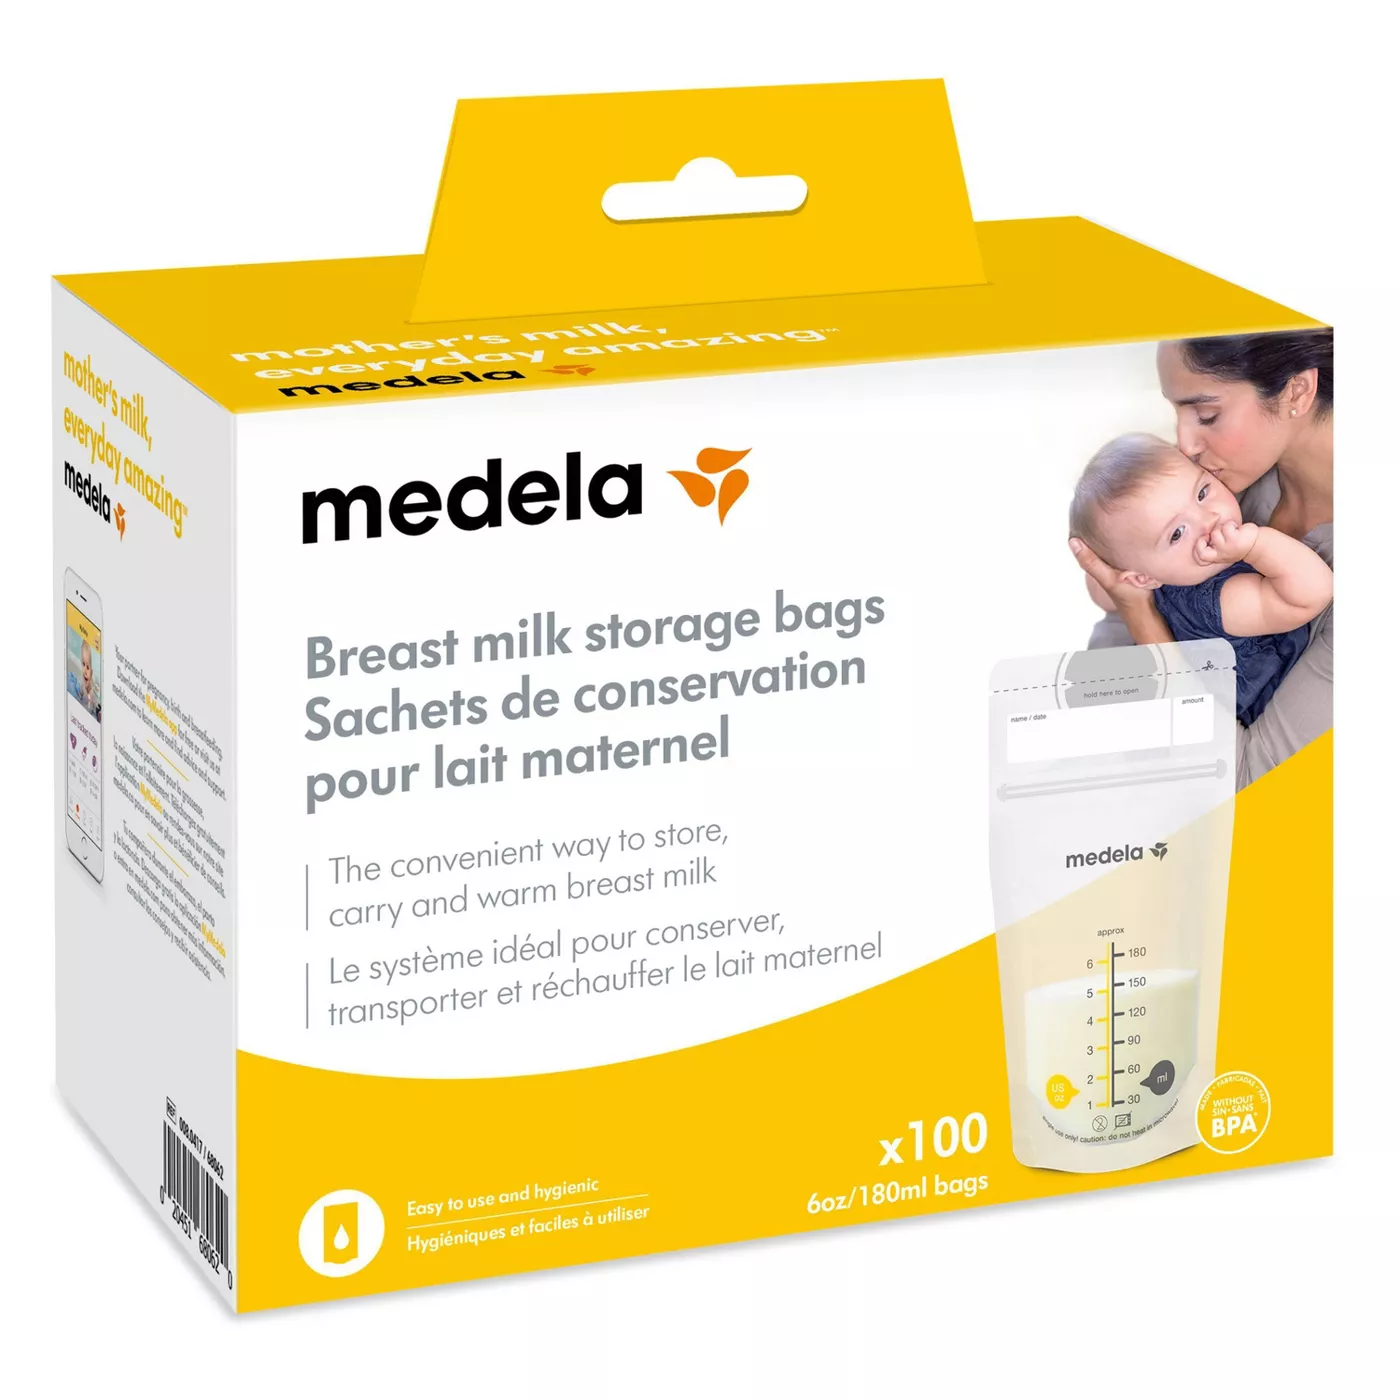 Medela Breast Milk Storage Bags 6oz/180ml - image 1 of 9